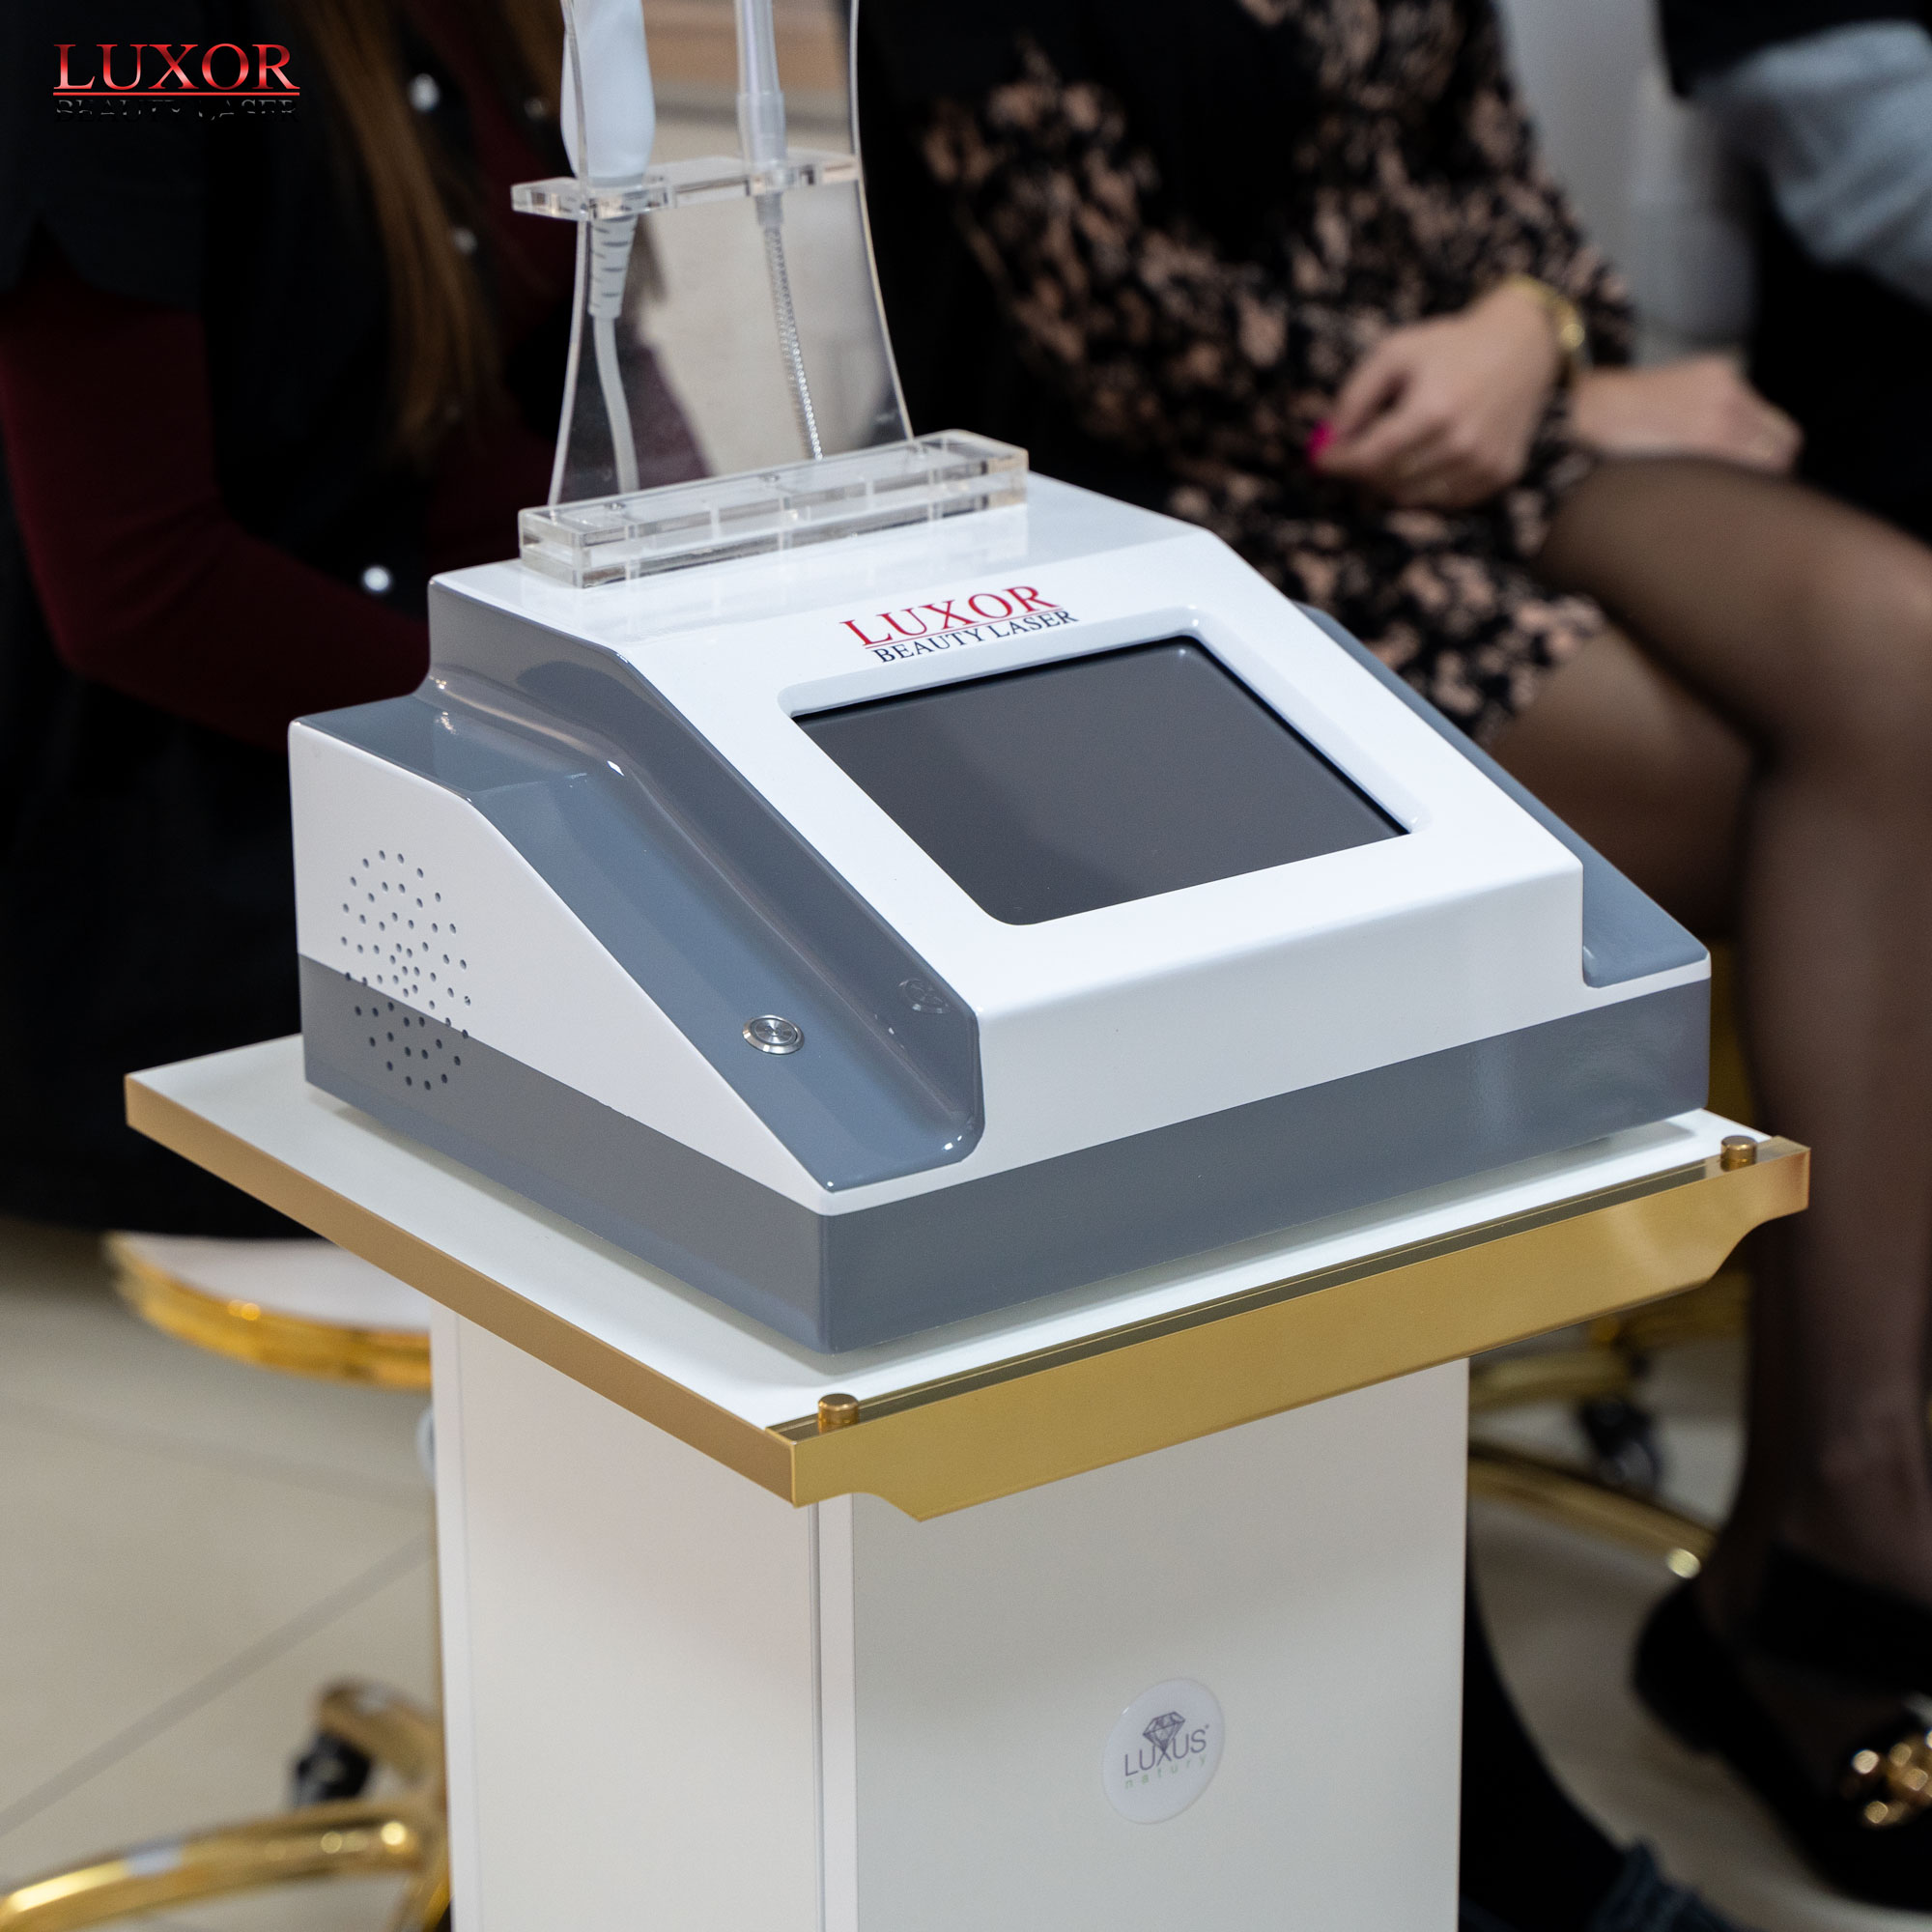 Zobacz ile miejsca zajmuje maszyna Luxor Beauty Laser 980 nm